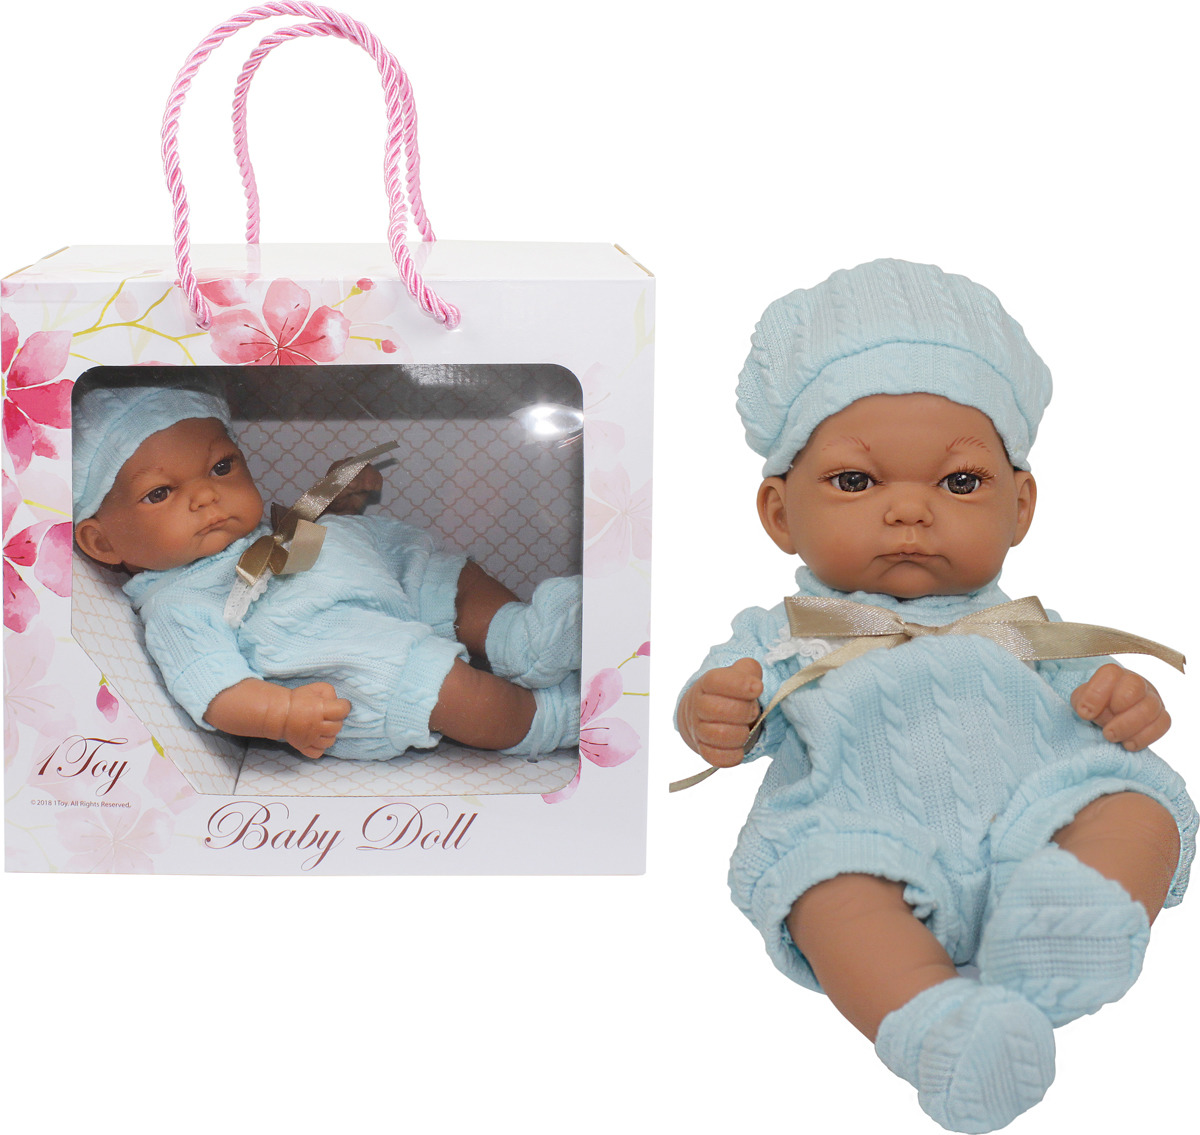 Пупс 1TOY Premium Baby Doll 25 см, Т15468, в голубом комбинезоне, пинетках и шапочке